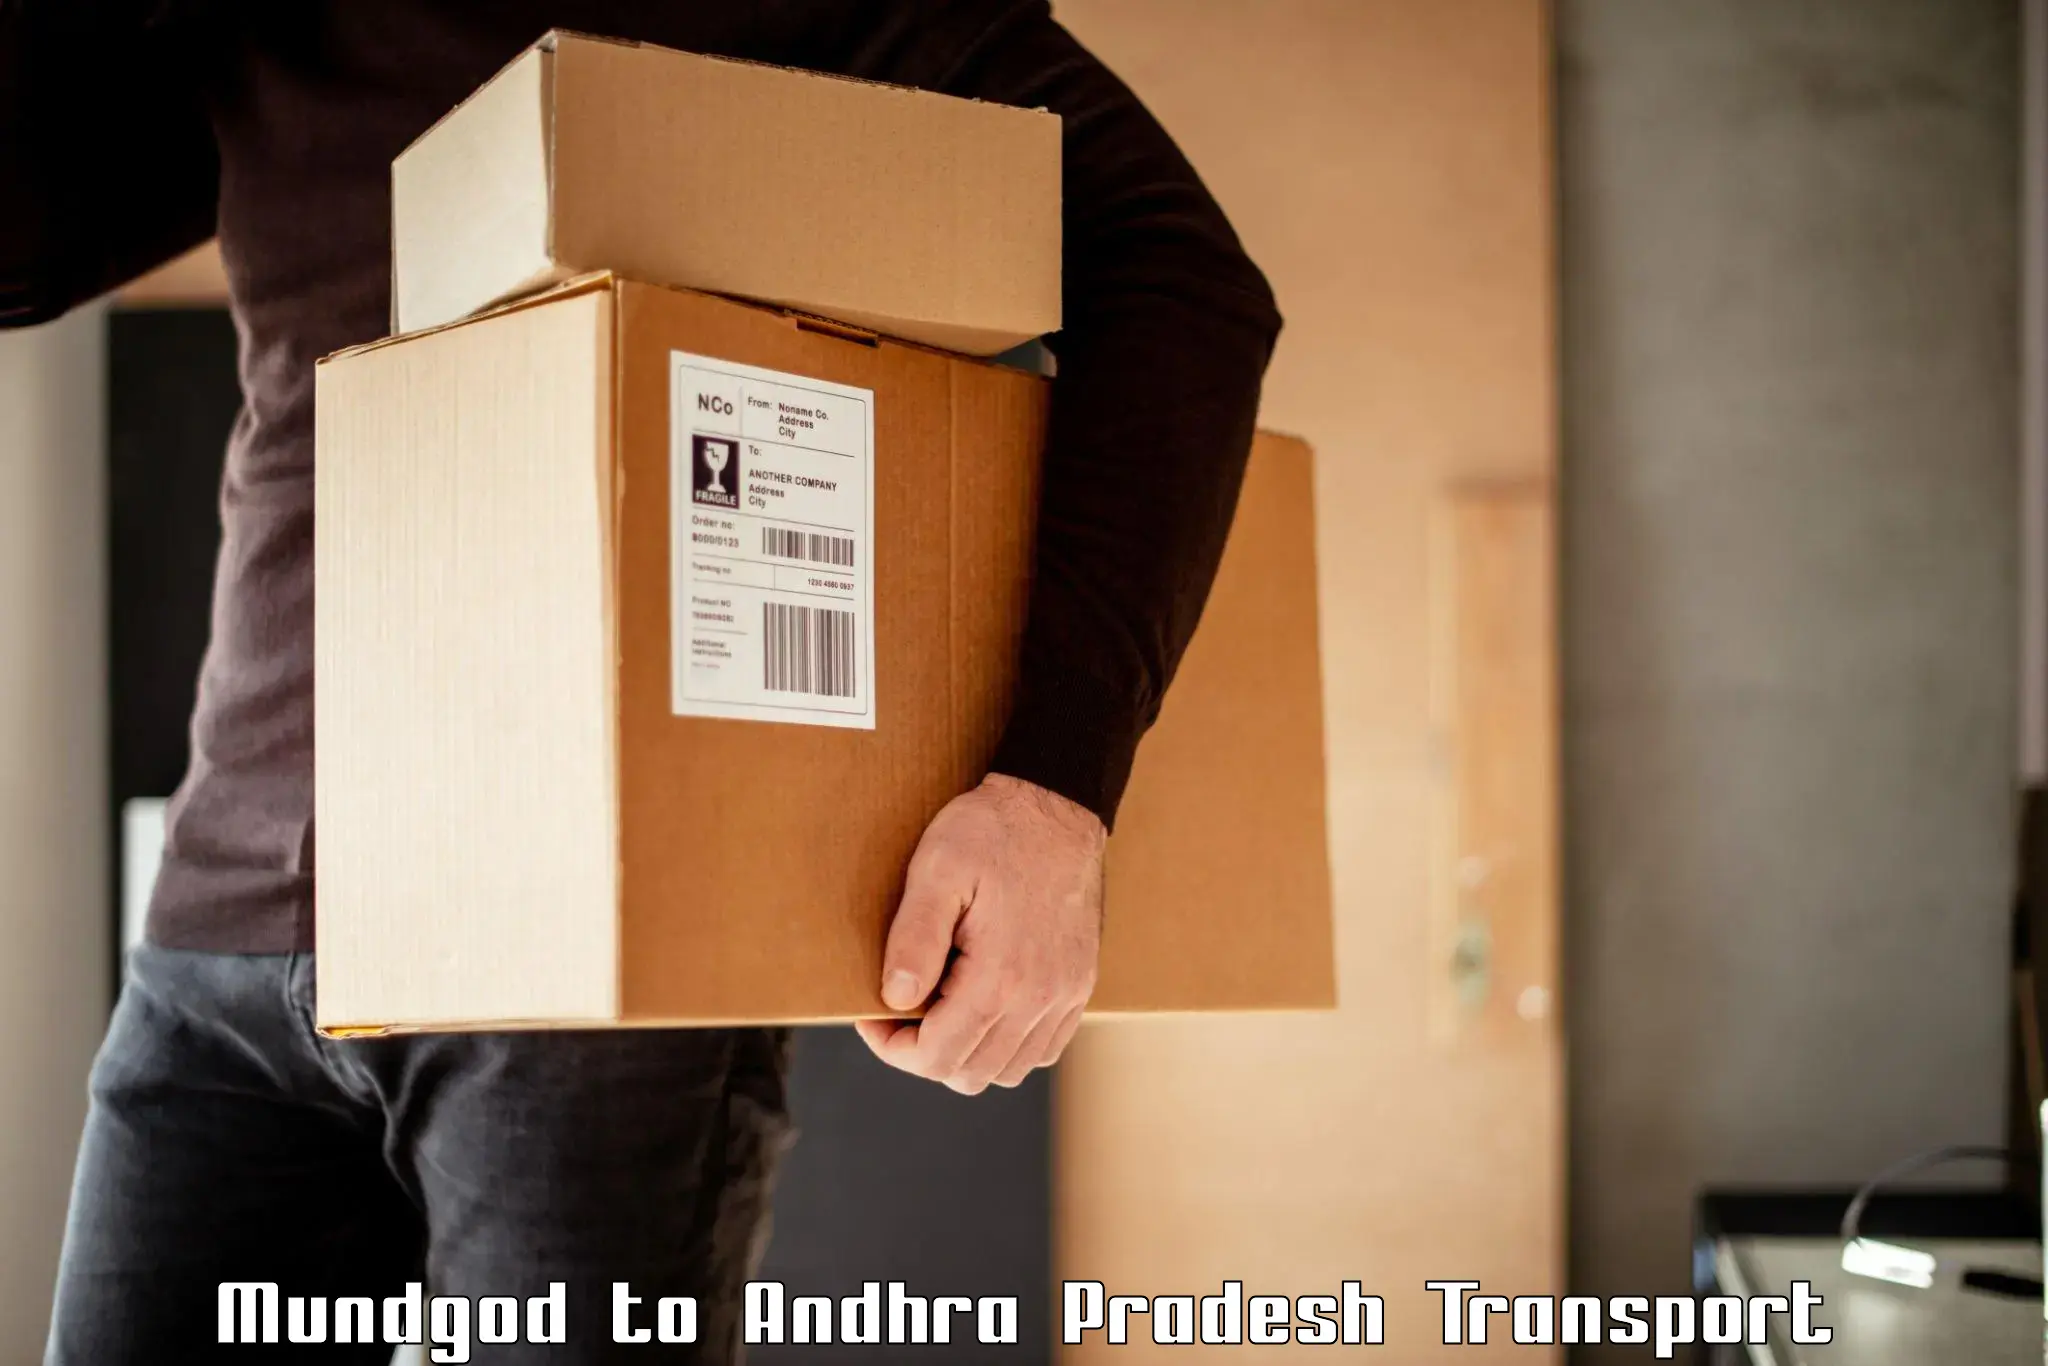 Vehicle parcel service Mundgod to Nandyal